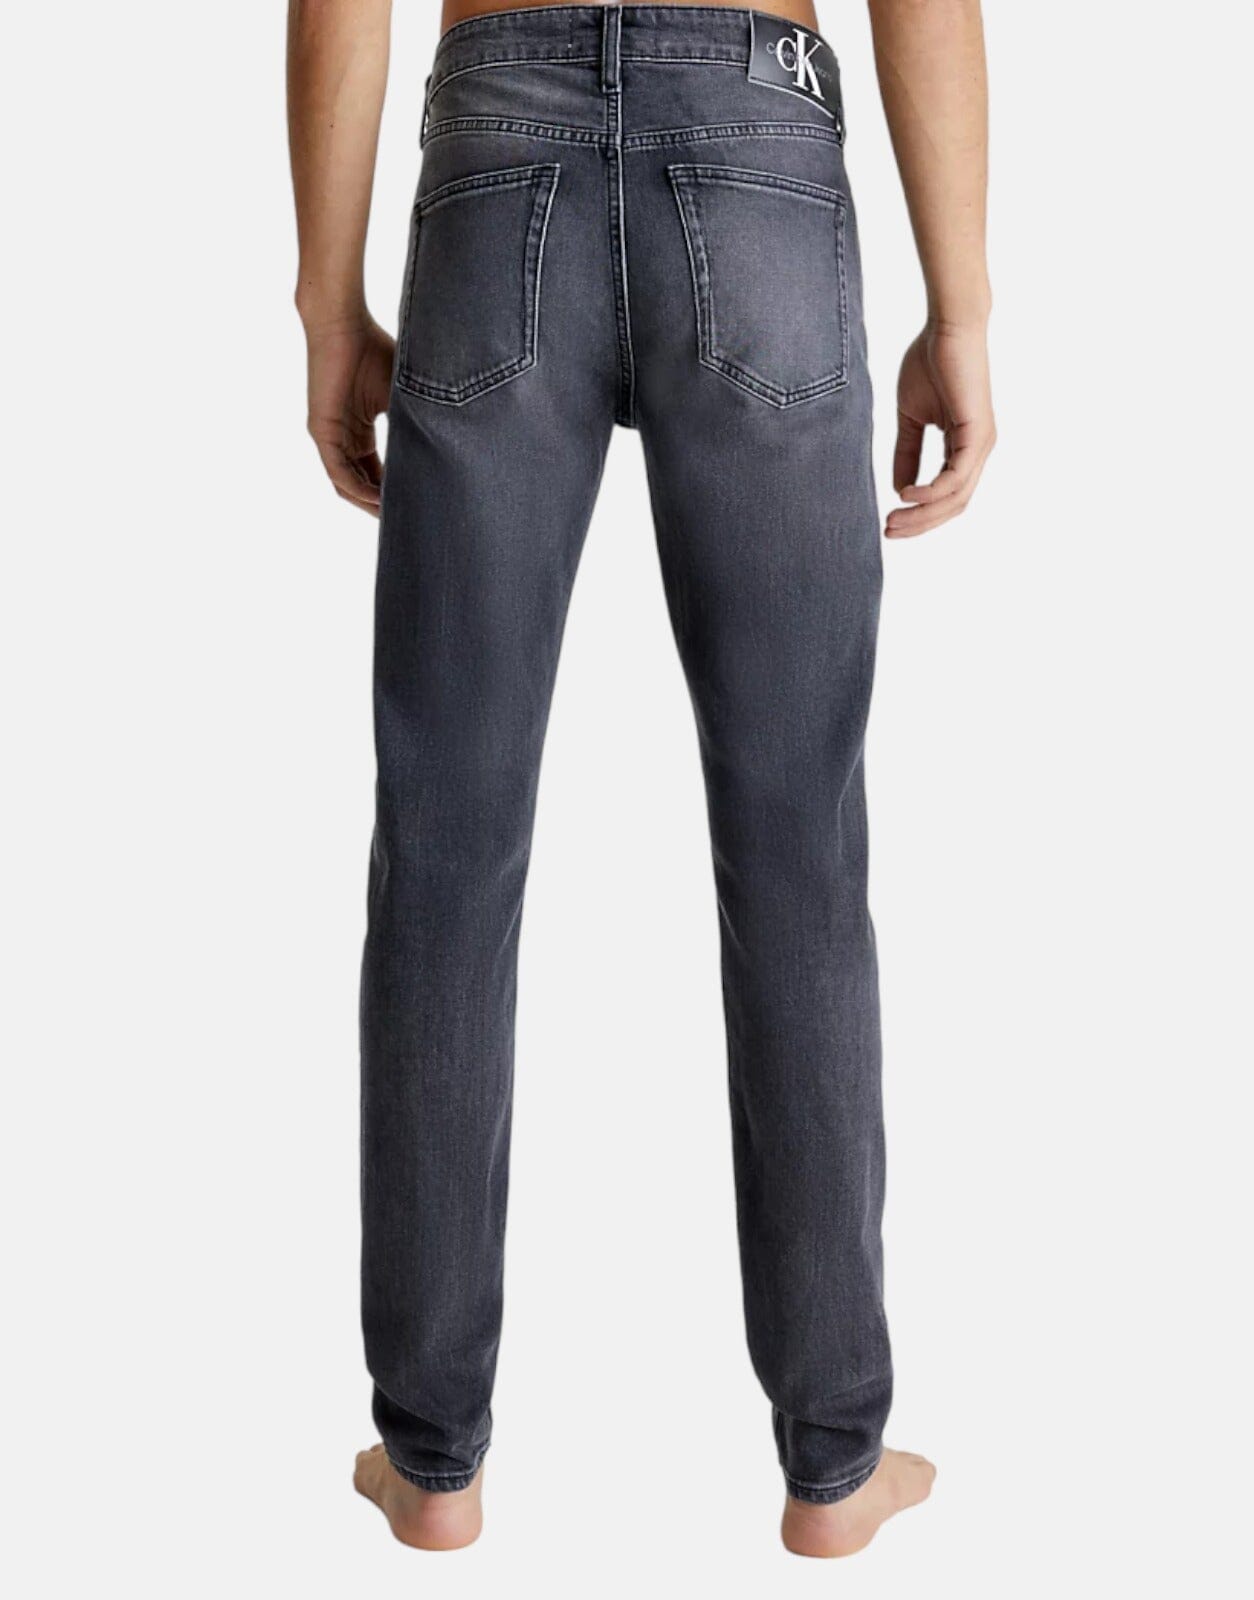 Calvin Klein Slim Taper Black Wash Jeans - Subwear